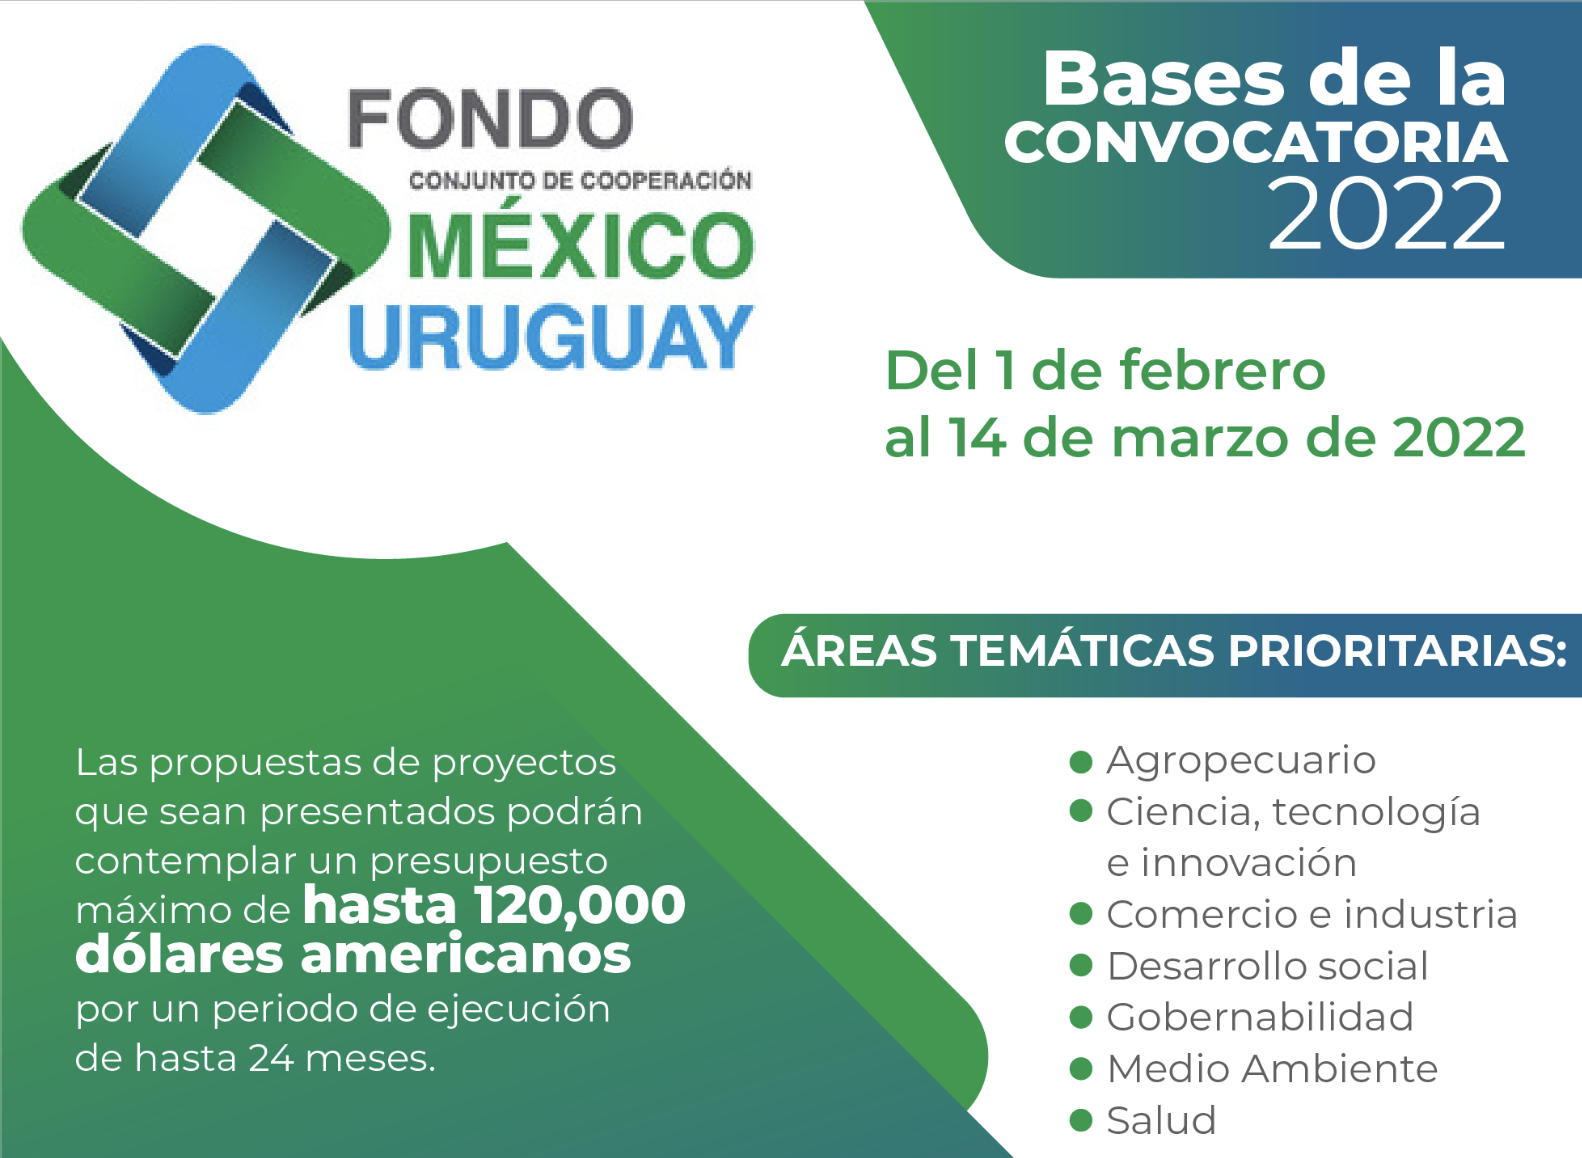 Fondo Conjunto de Cooperación México- Uruguay. Bases de la Convocatoria 2022
